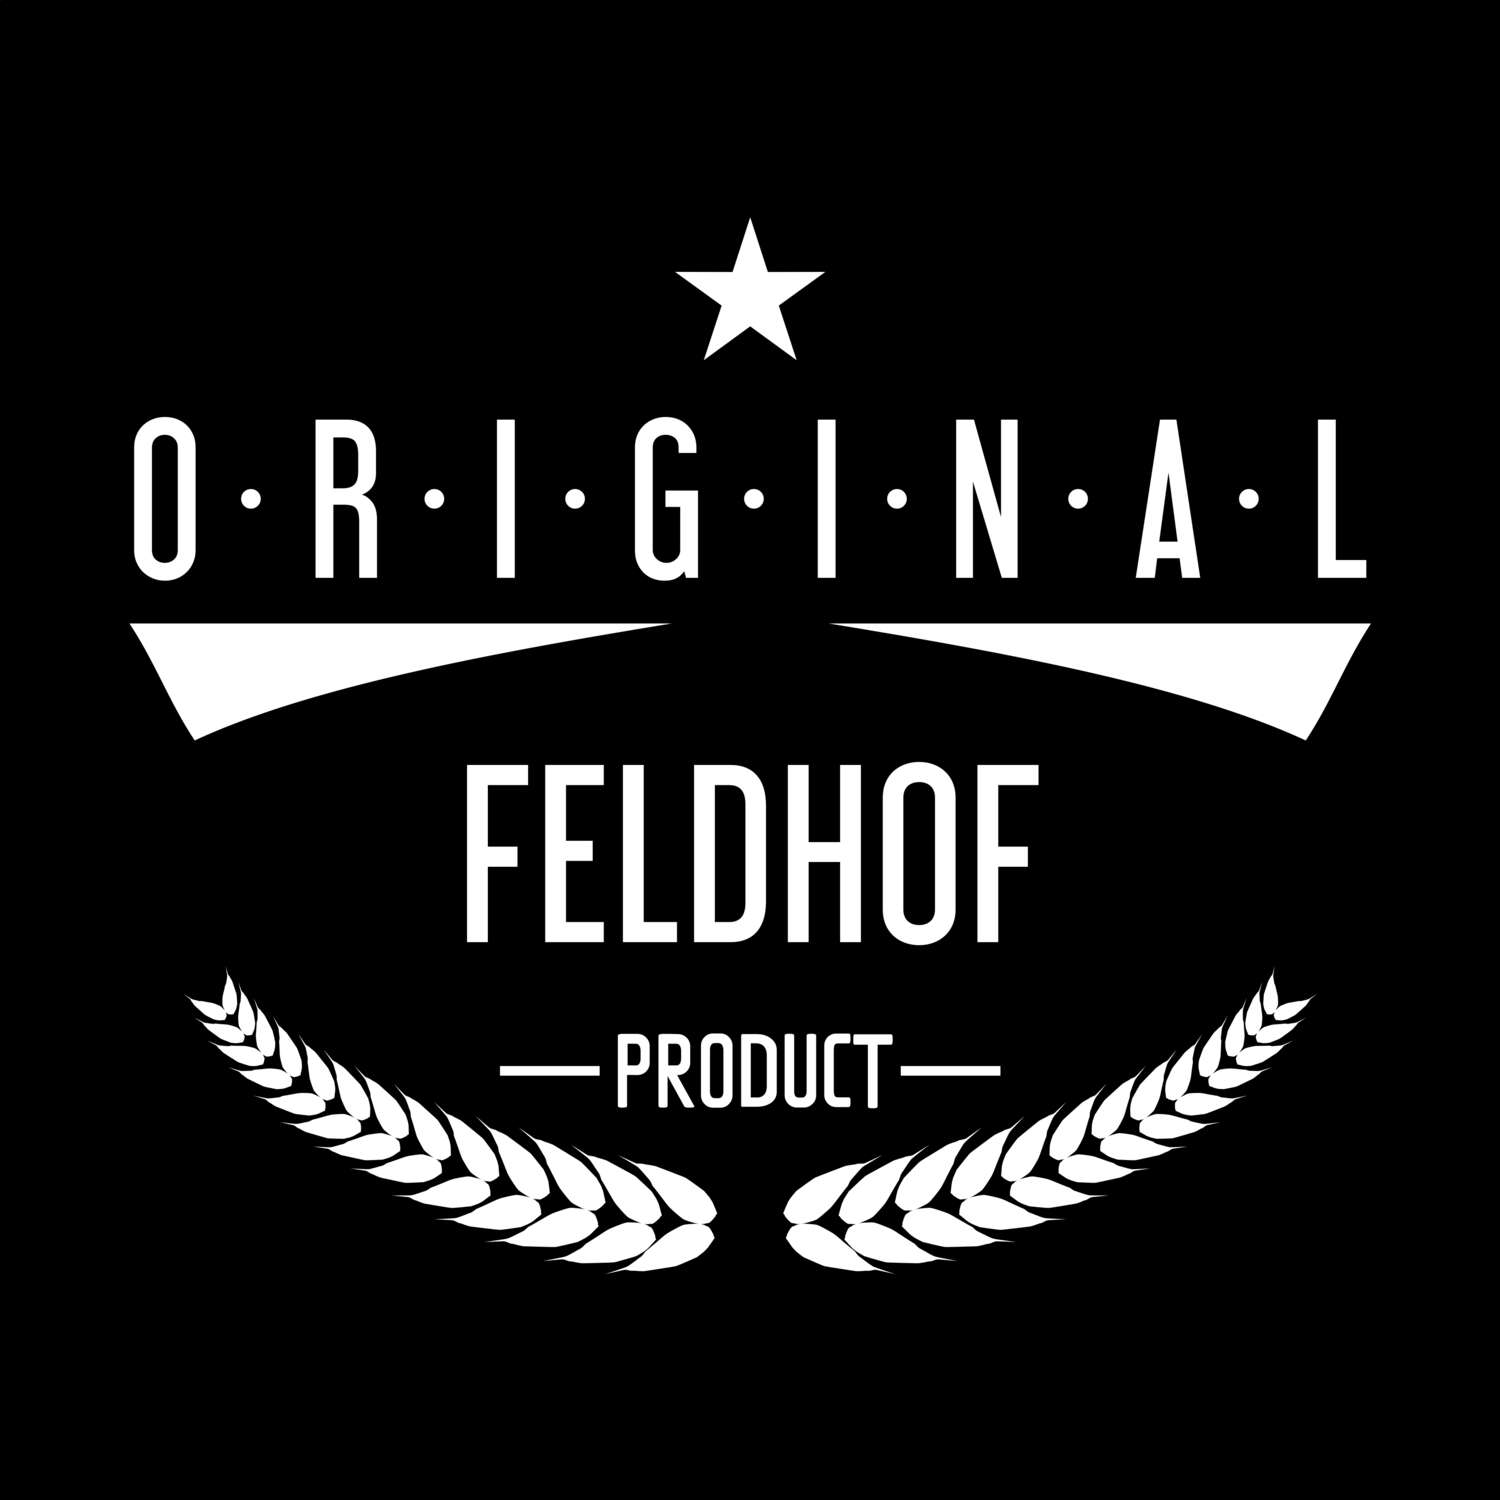 Feldhof T-Shirt »Original Product«